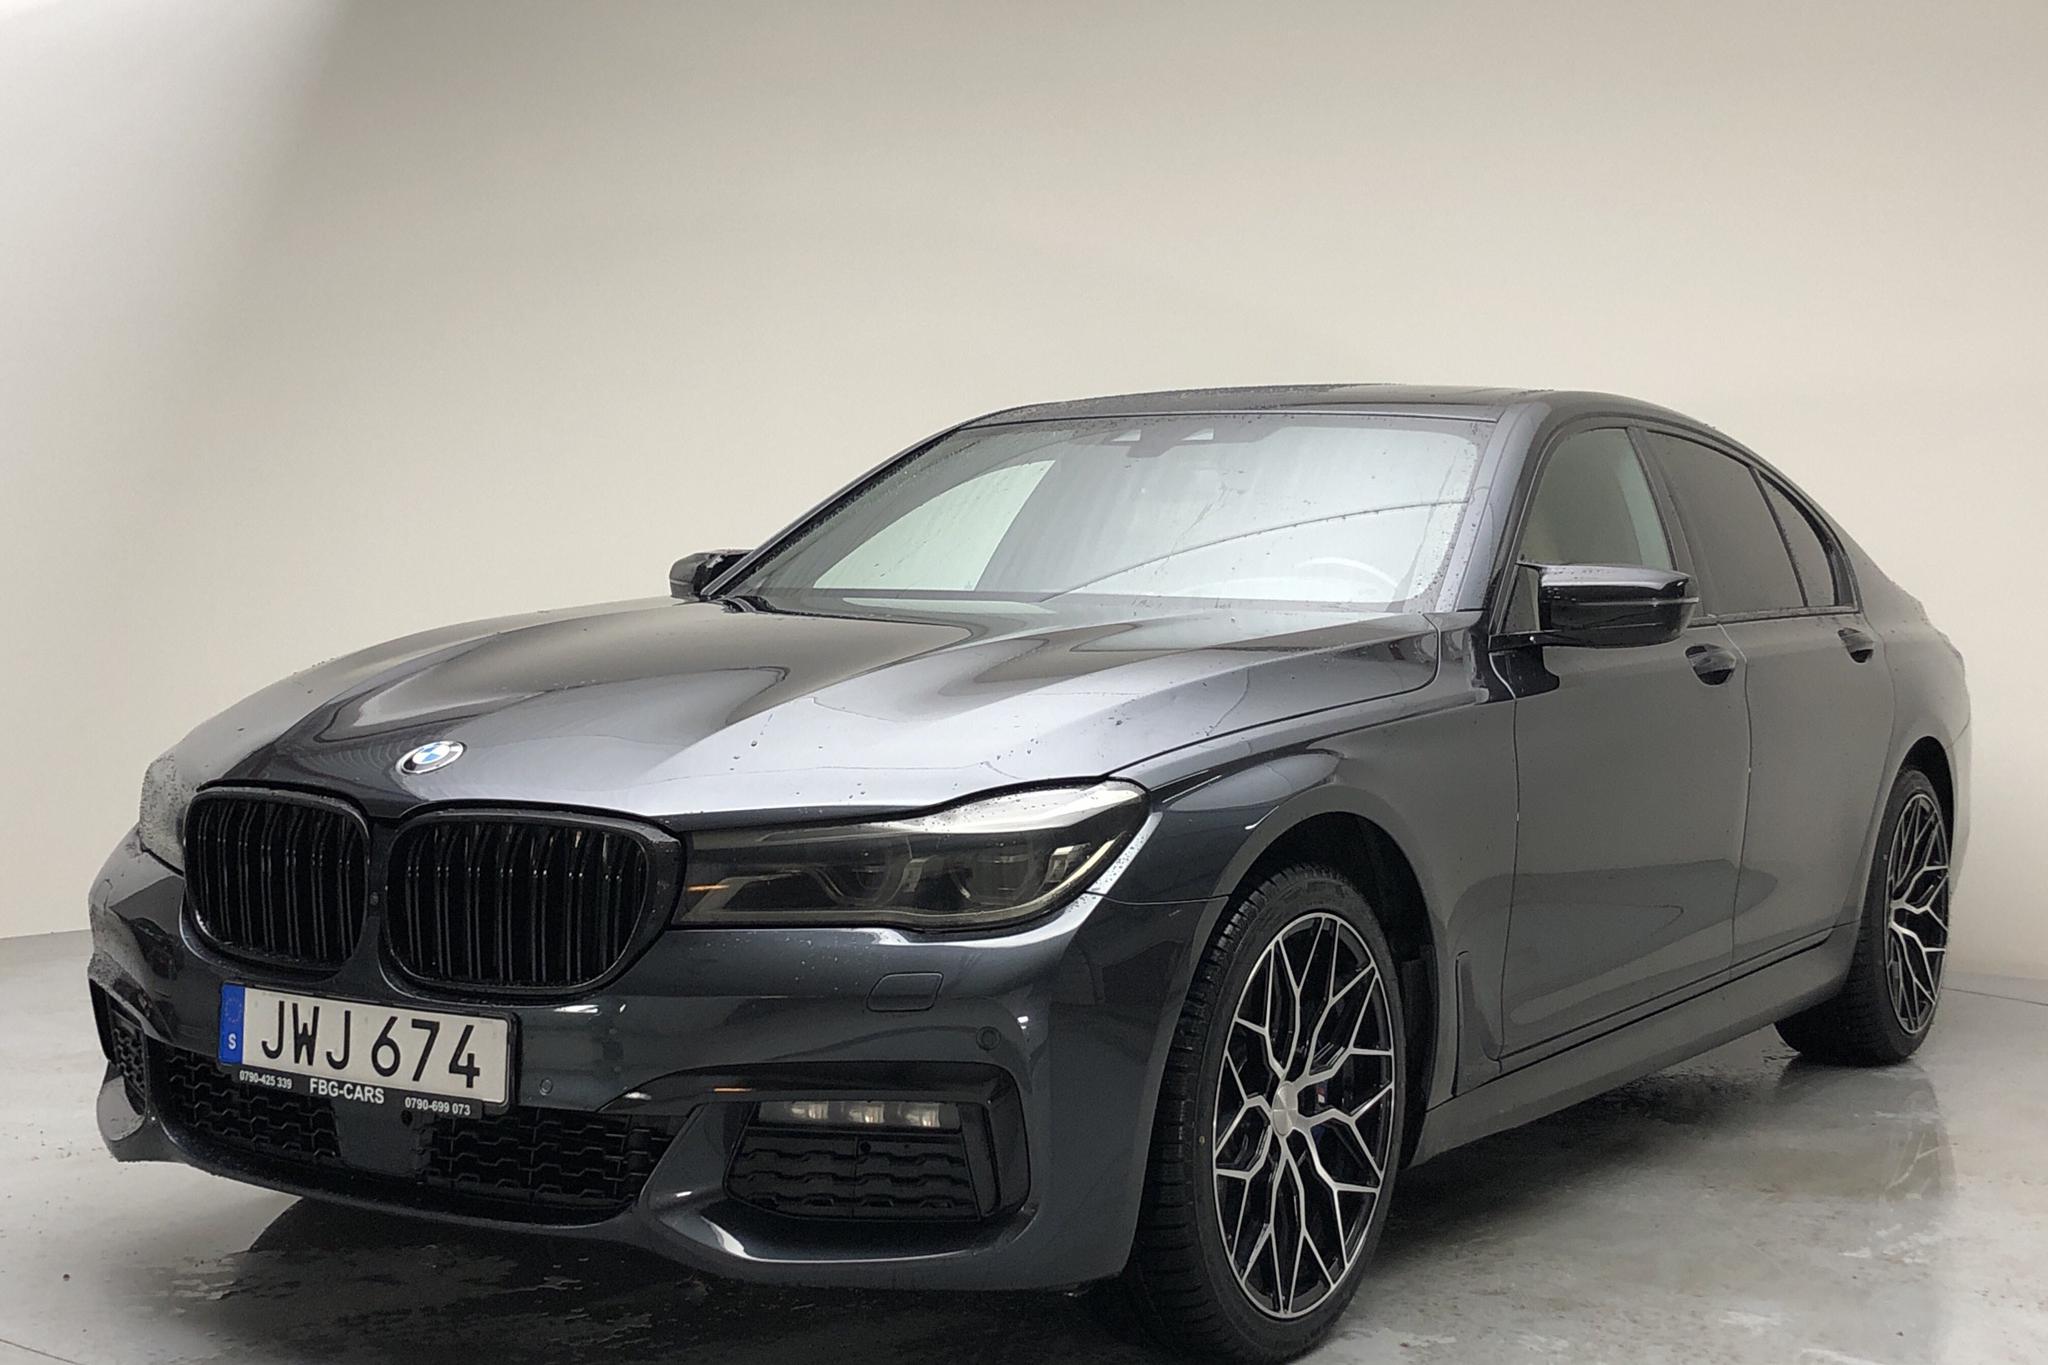 BMW 730d xDrive Sedan, G11 (265hk) - 106 350 km - Automatic - gray - 2016